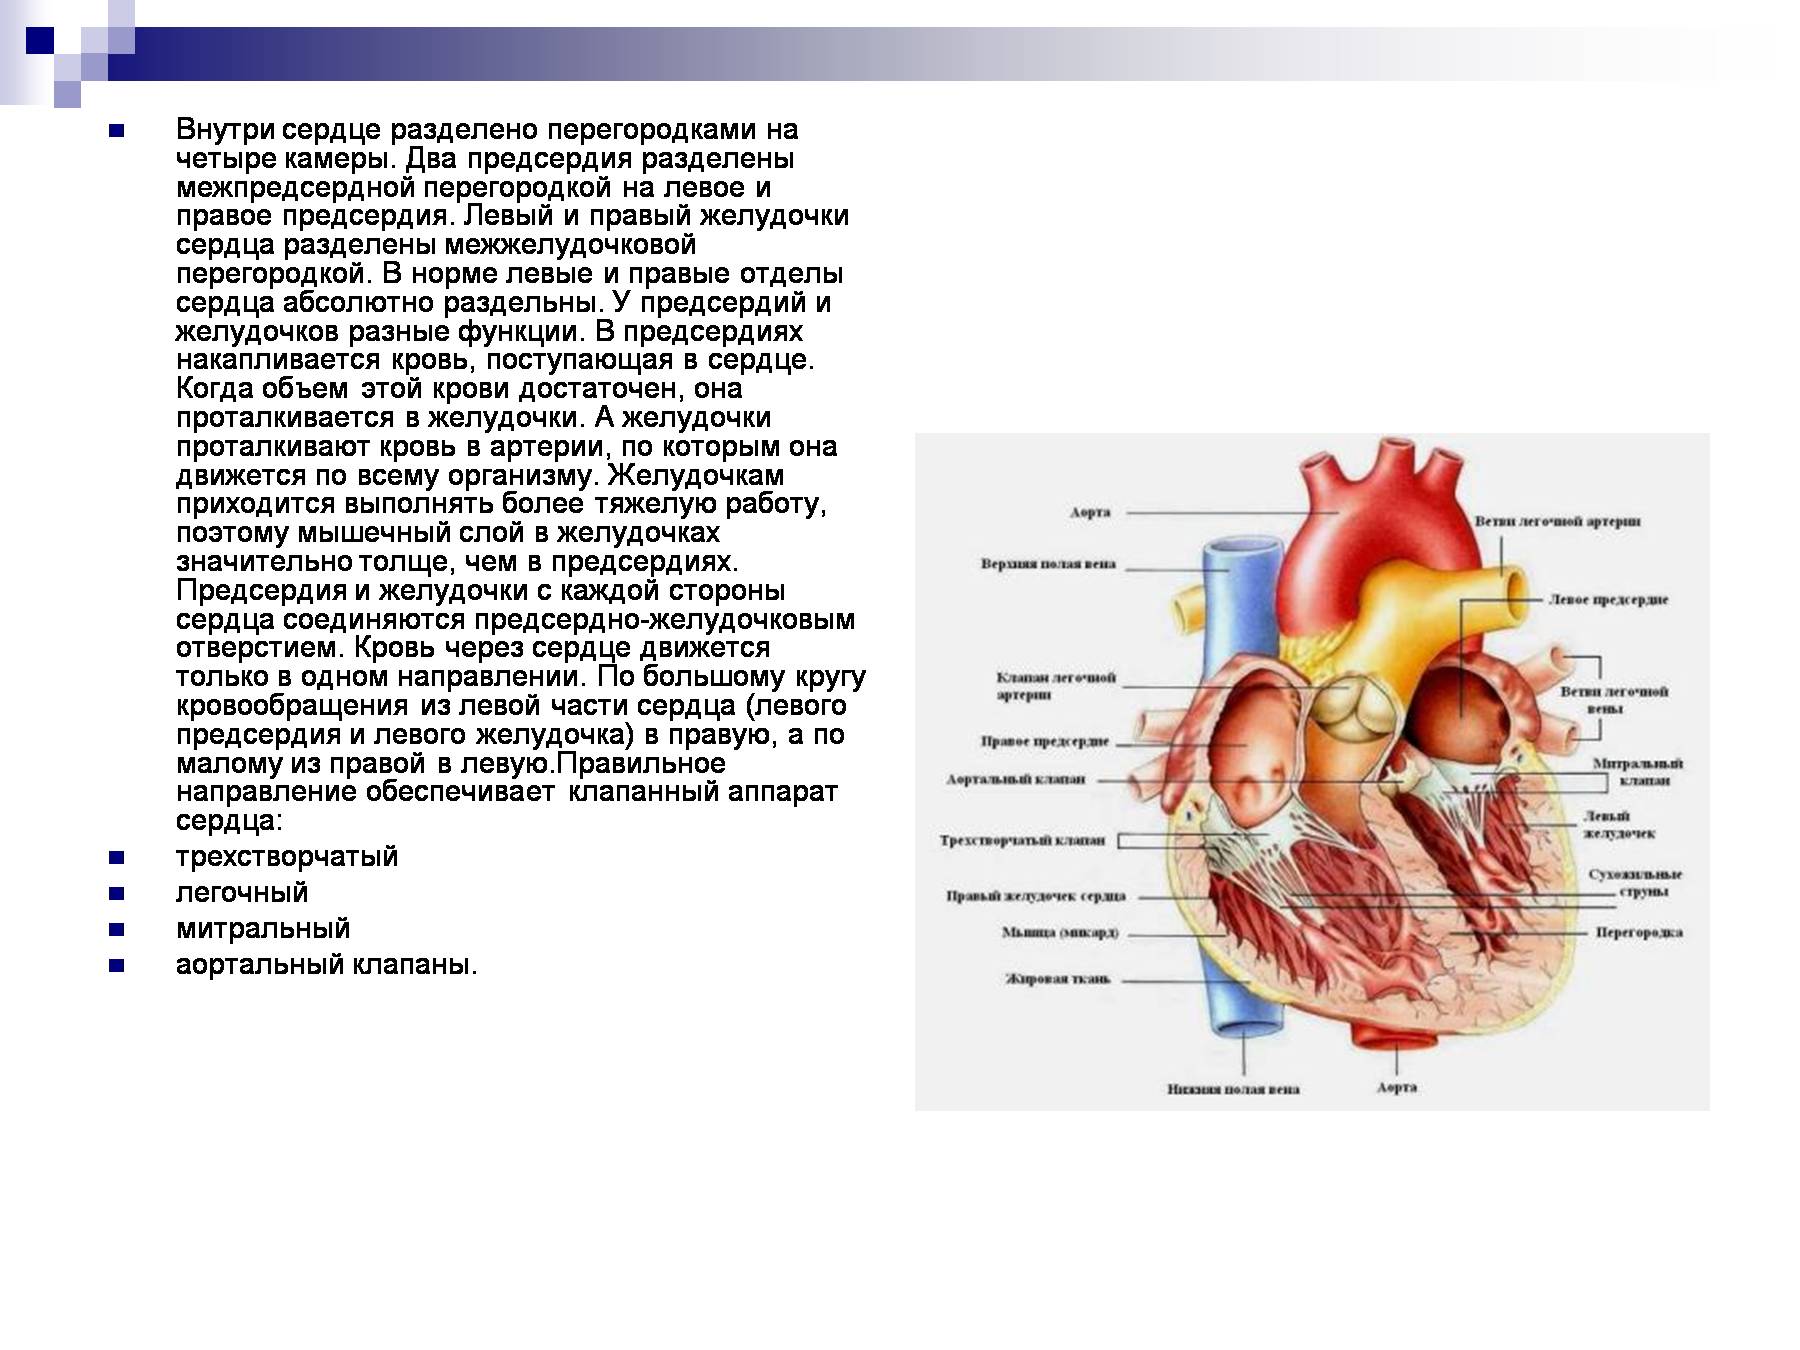 Правый желудочек отделен от правого предсердия. Межпредсердная перегородка сердца строение. Строение межпредсердной перегородки сердца. Перегородка предсердий и желудочков сердца. Расширение левого предсердия (объем 88 мл).